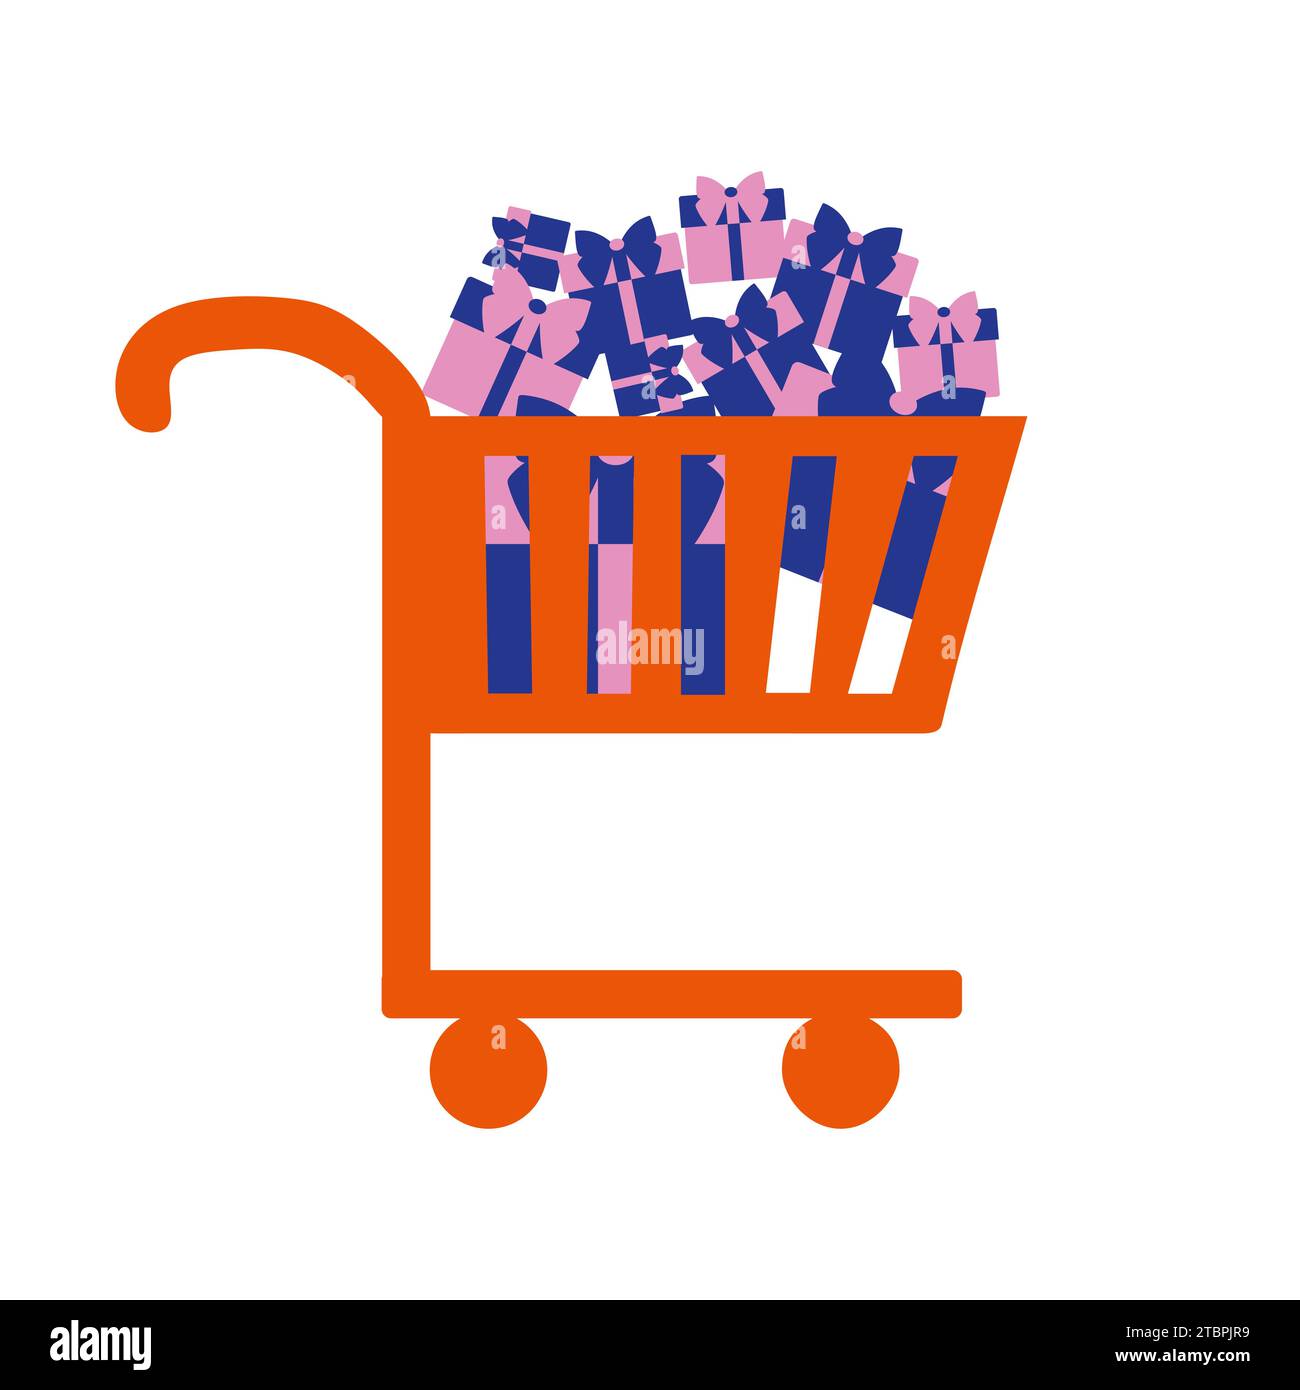 Llena carrito de compras, carrito de supermercado lleno de comida, imagen  aislada sobre fondo blanco Fotografía de stock - Alamy